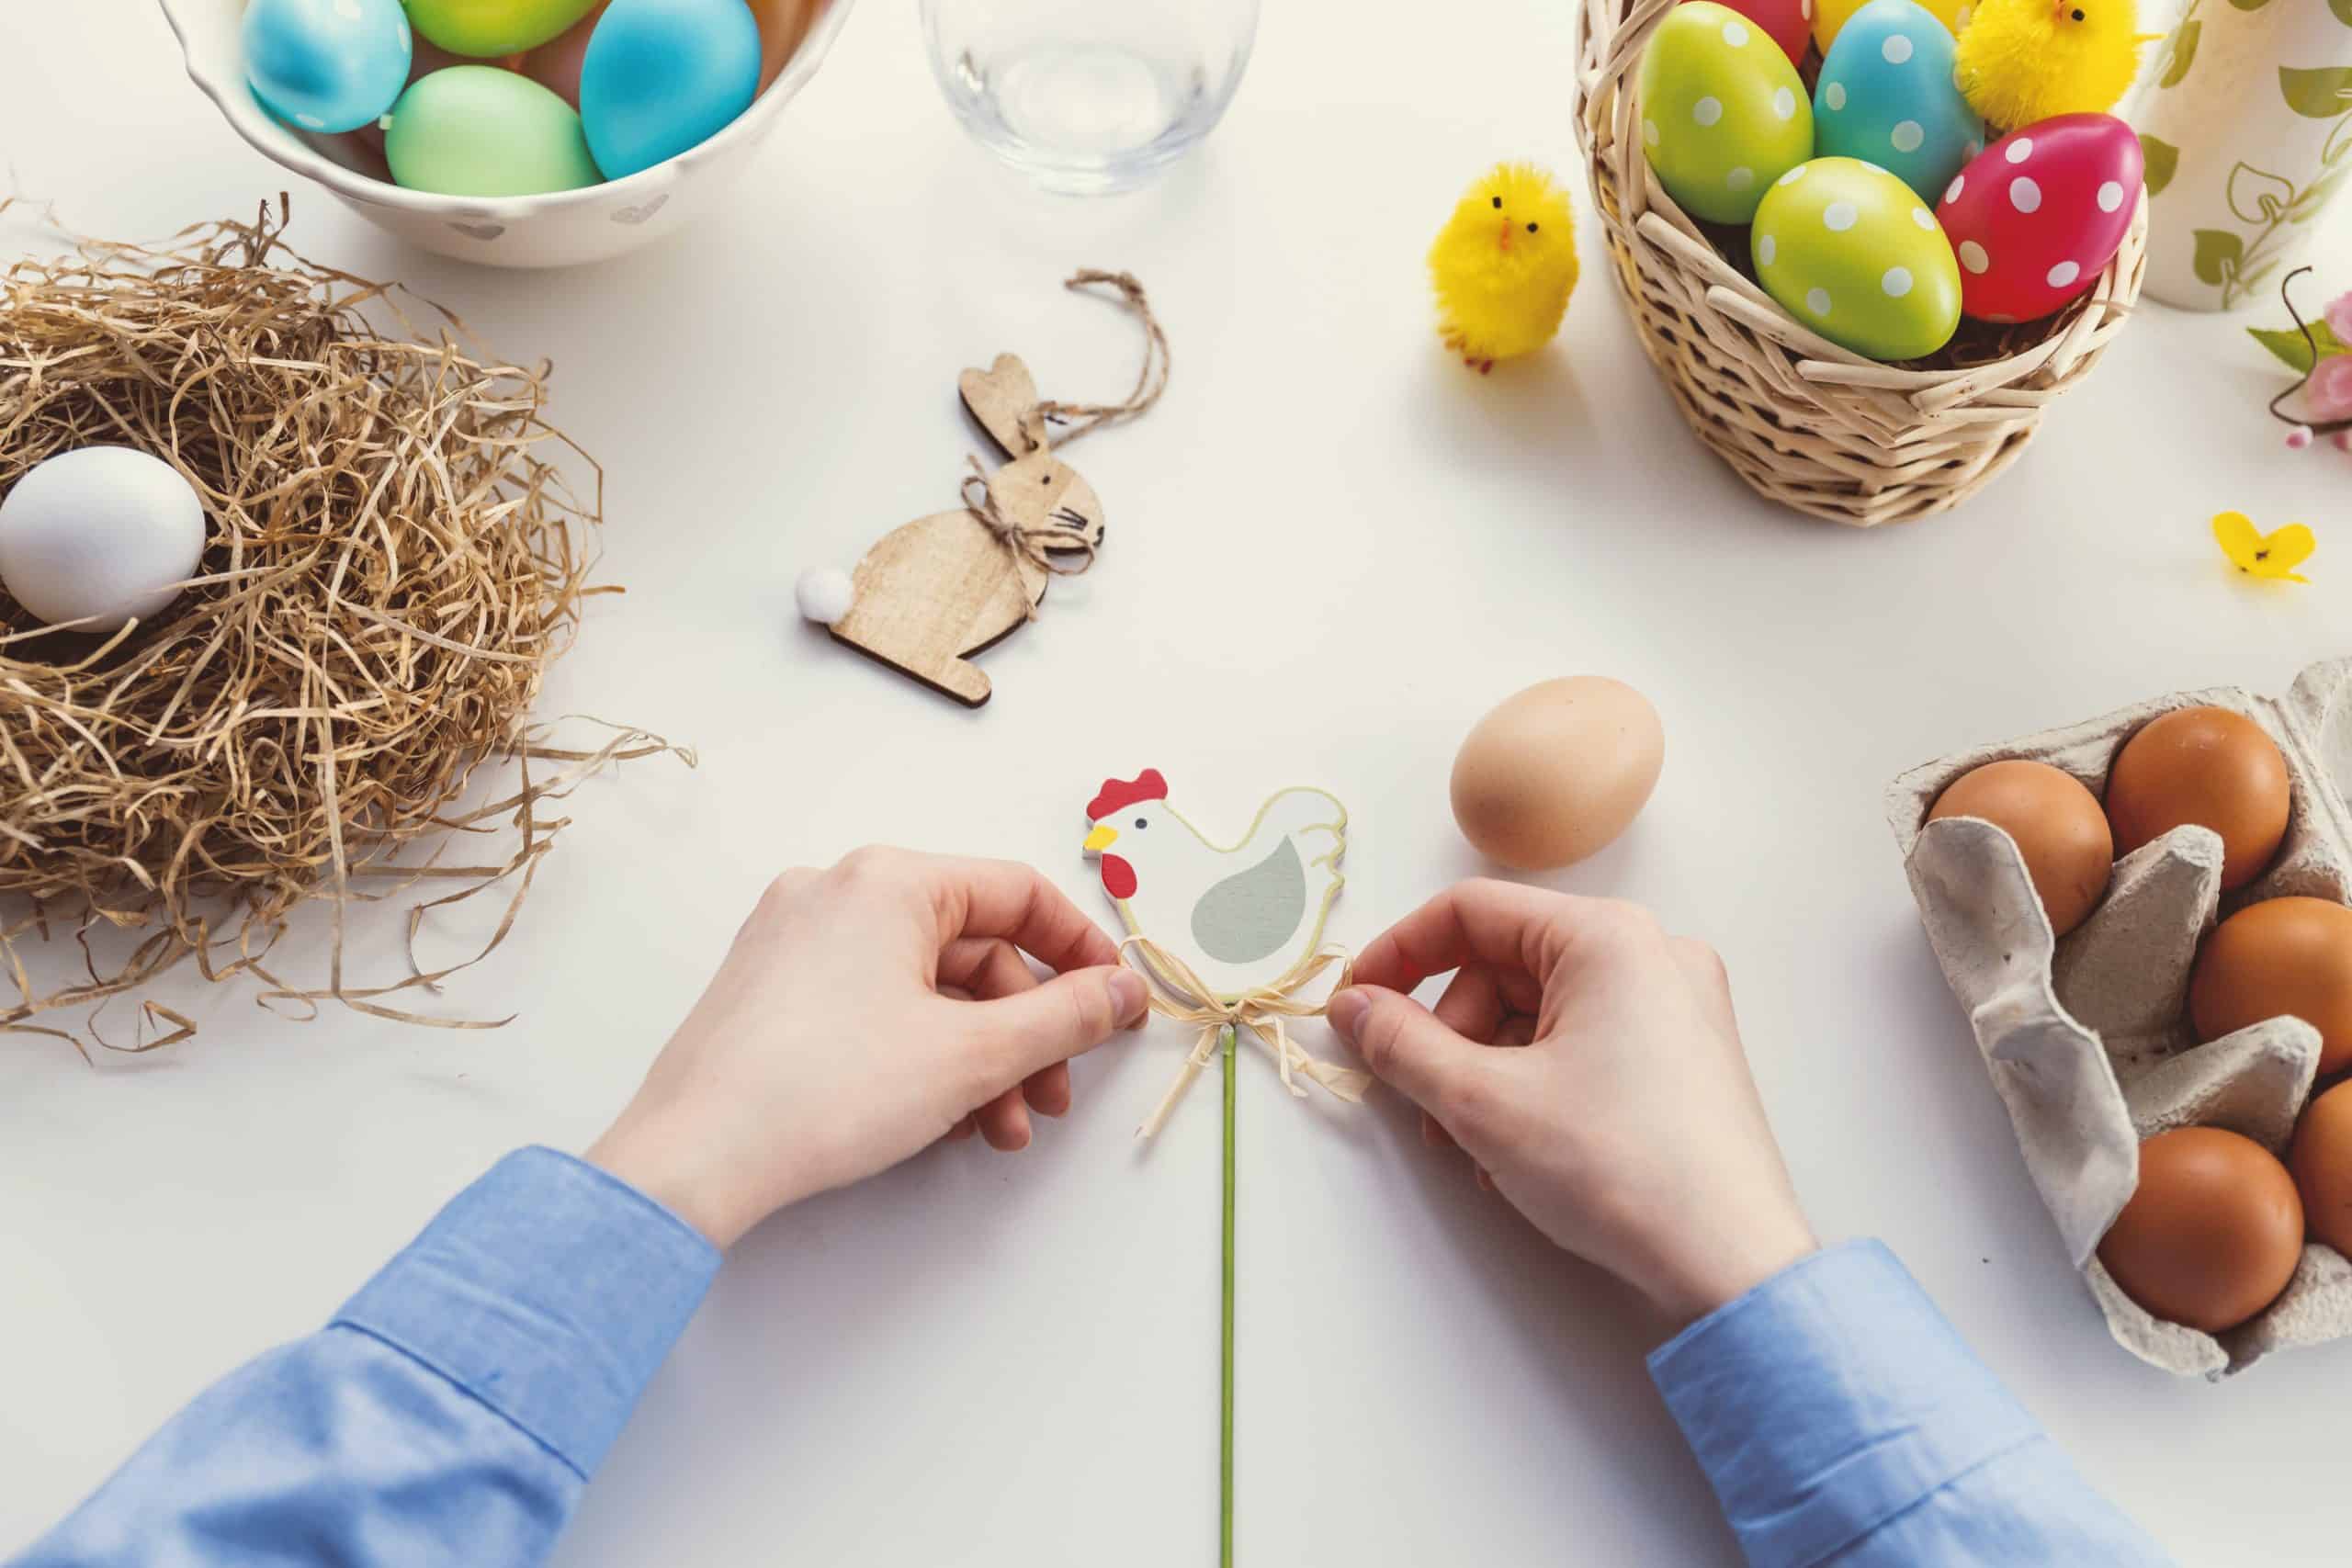 Wielkanocne dekoracje – co warto mieć?